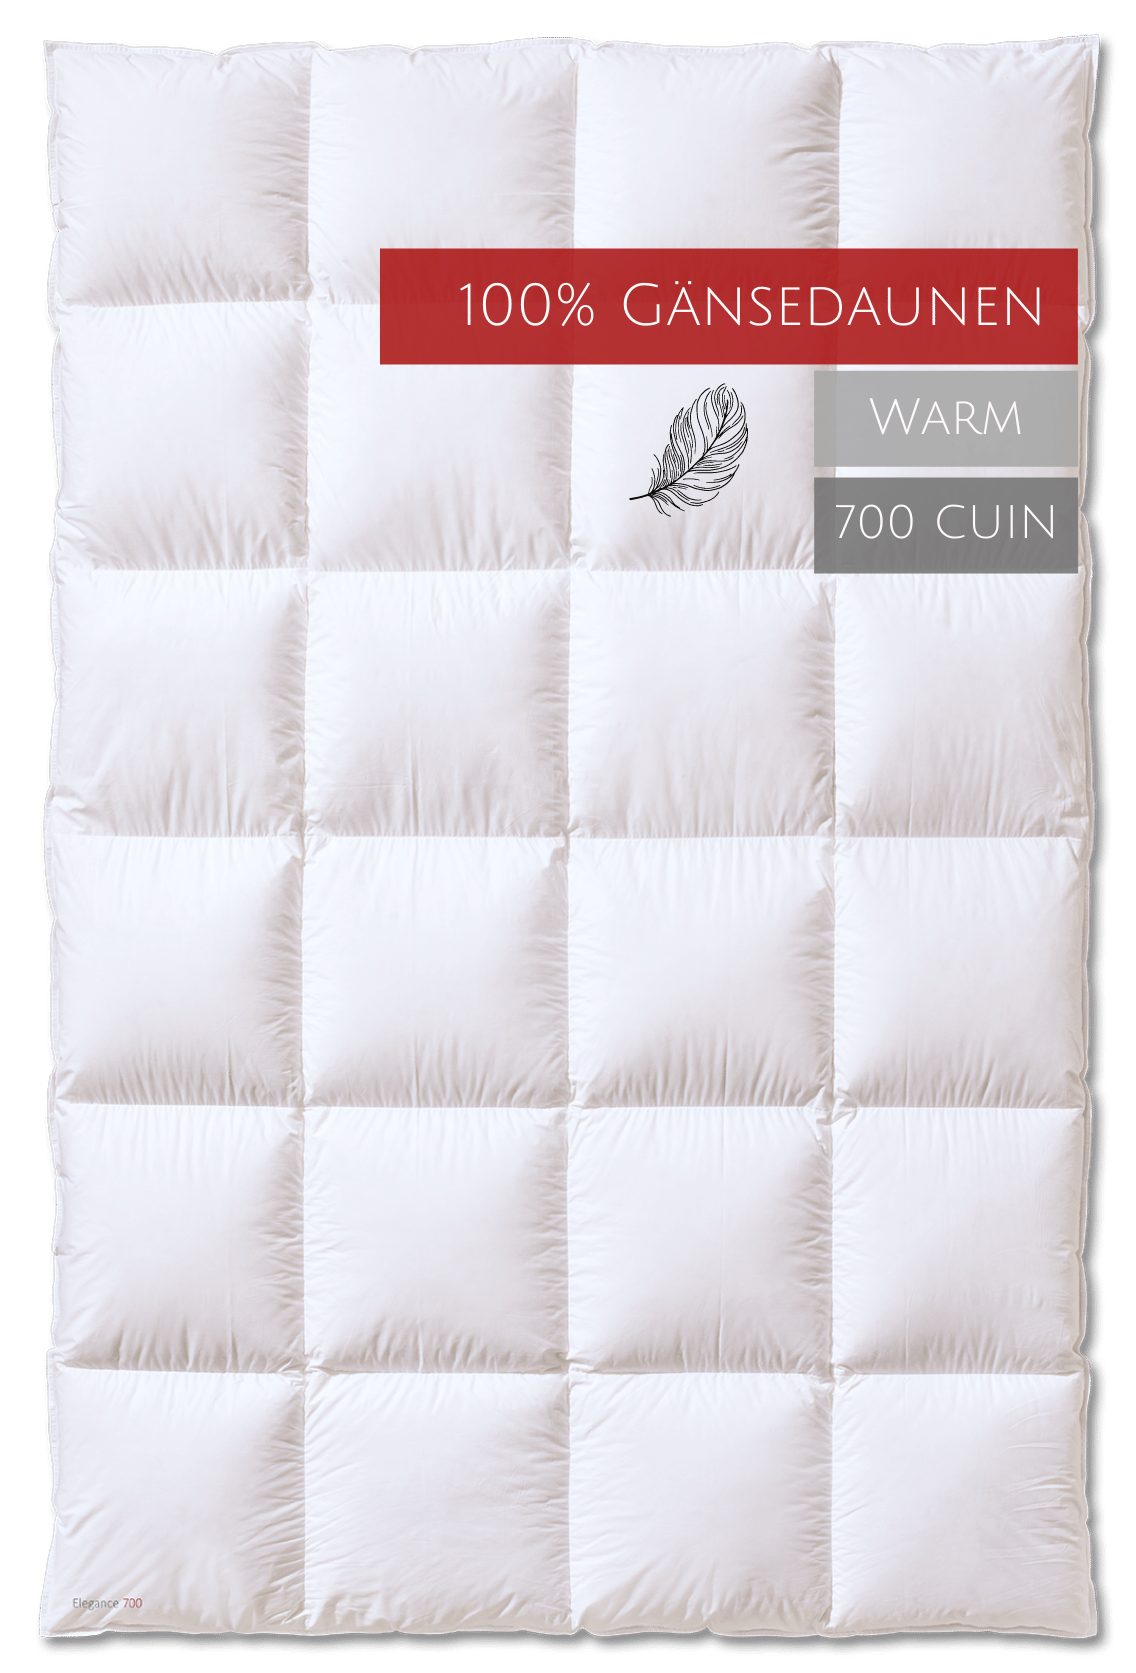 Kauffmann, Elegance Baumwolle, Gänsedaunen, allergikerfreundlich Gänsedaunenbettdecke, 100% Wärmestufe 700 Füllung: Bezug: "warm",